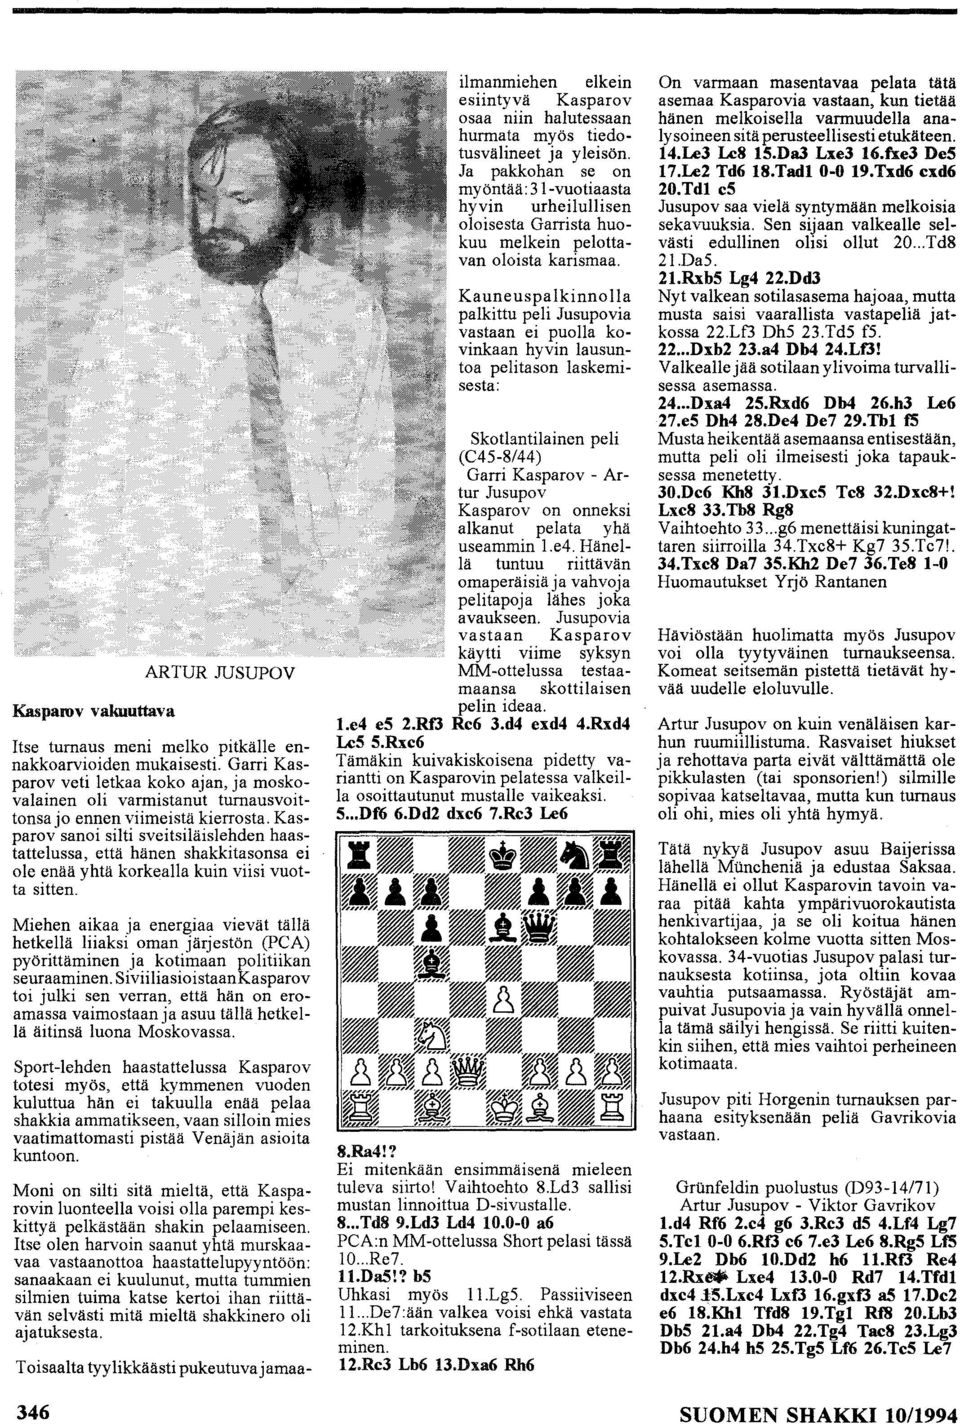 Kasparov sanoi silti sveitsiläislehden haastattelussa, että hänen shakkitasonsa ei ole enää yhtä korkealla kuin viisi vuotta sitten.